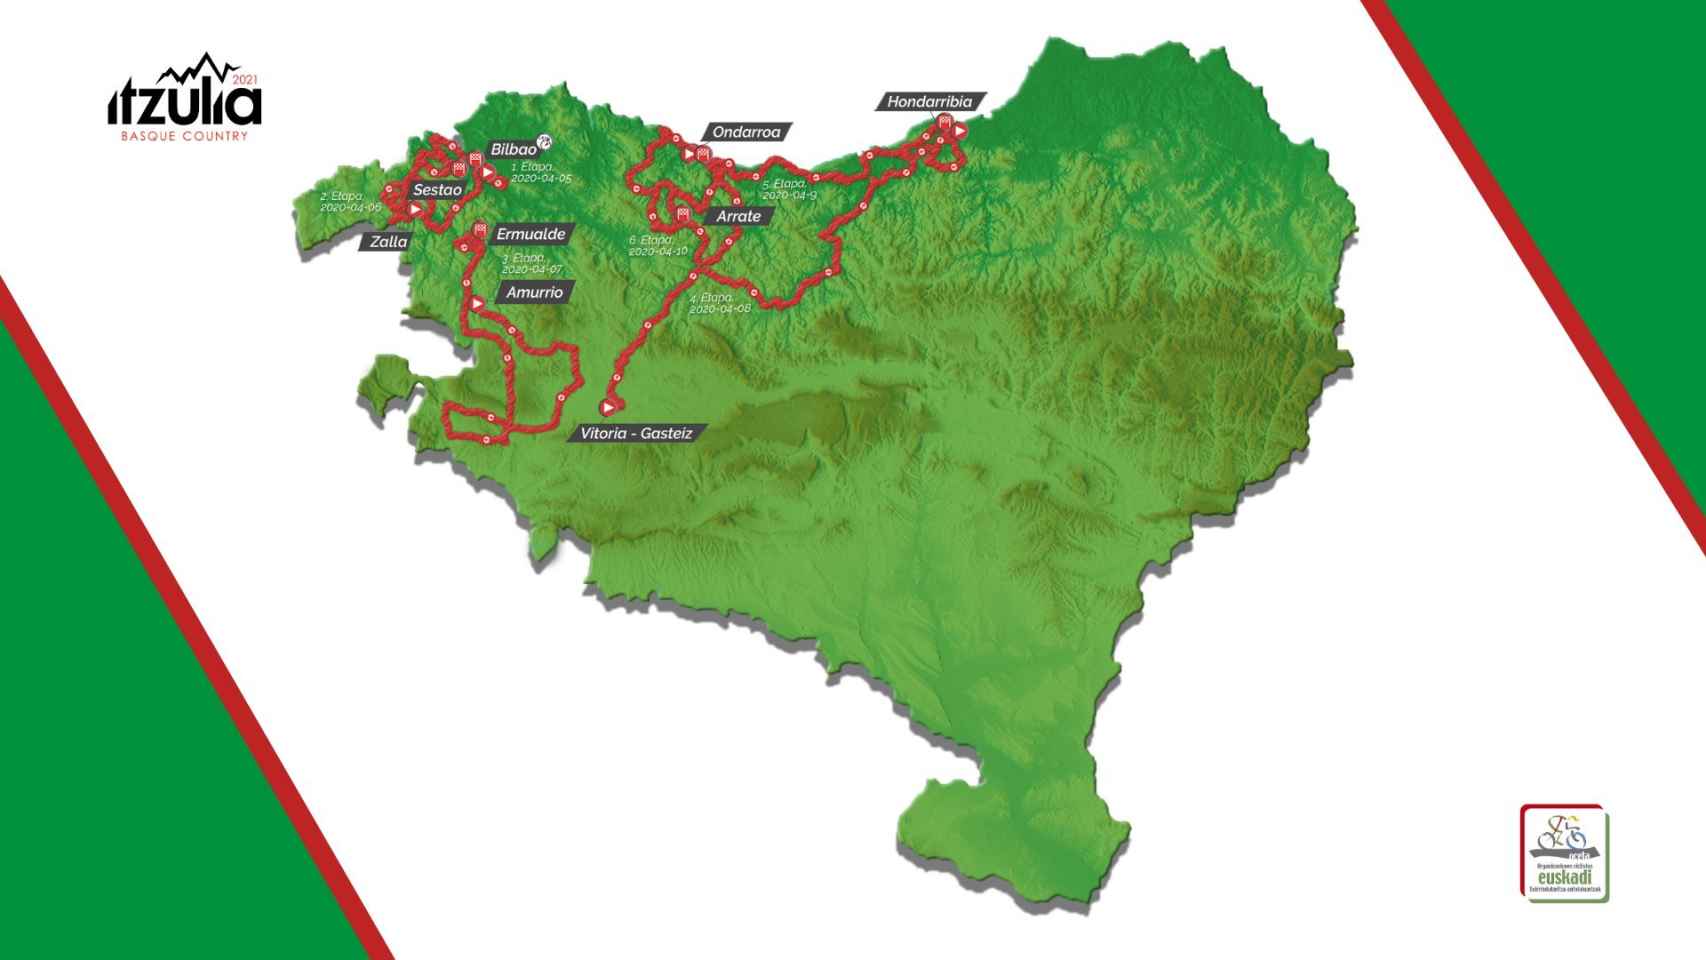 El recorrido de la Itzulia Basque Country 2021, la Vuelta al País Vasco